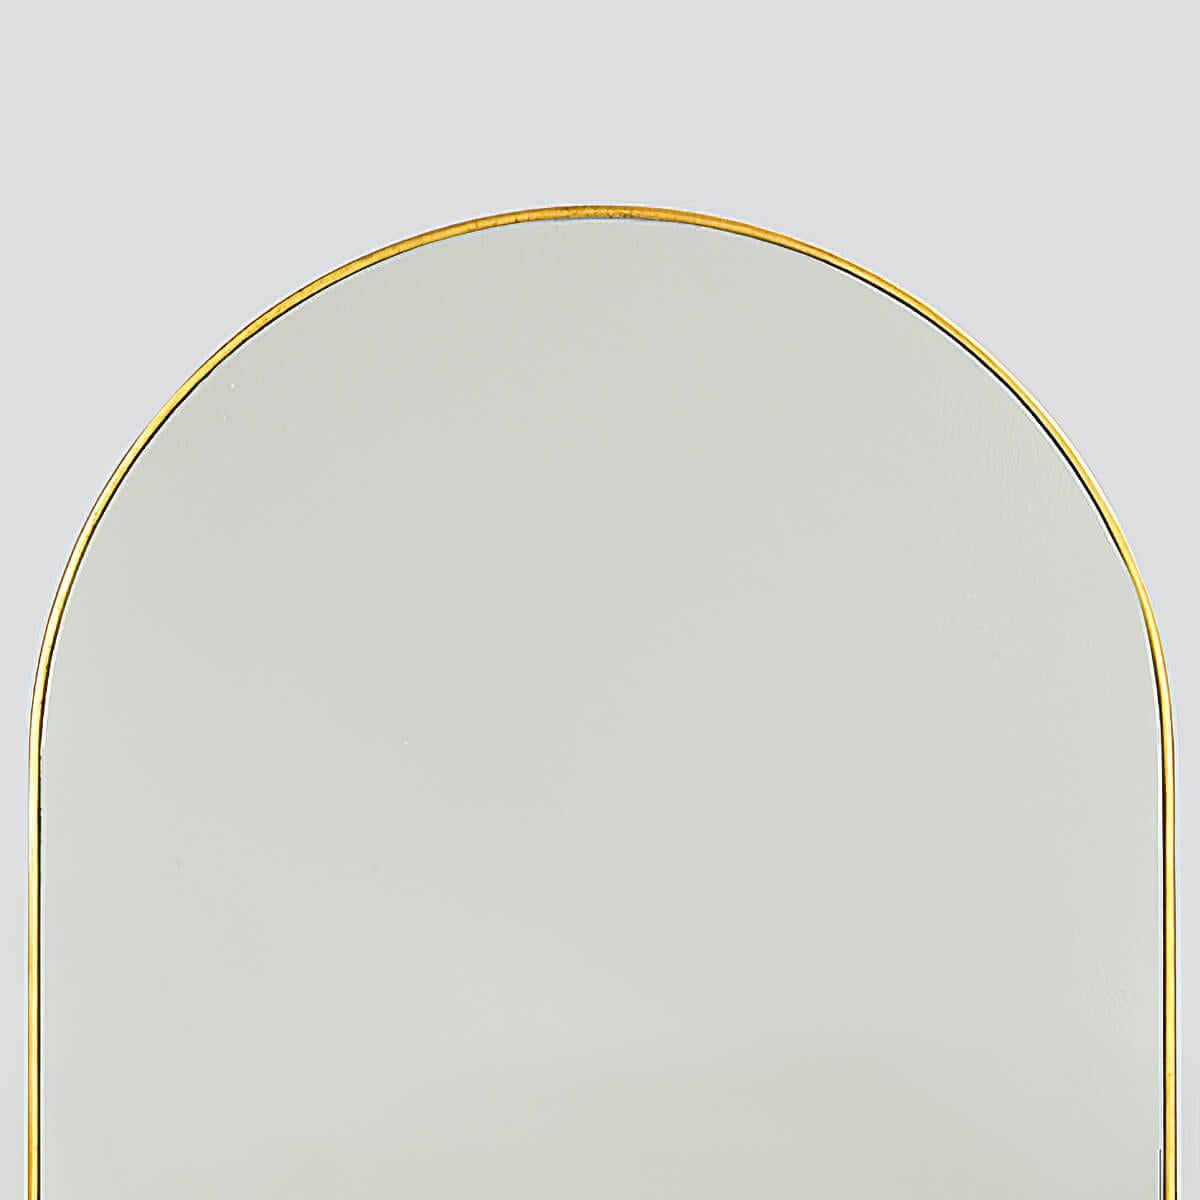 Ein moderner vergoldeter Bogenspiegel mit vergoldetem Metallrahmen und klarer Spiegelplatte.

Abmessungen: 22